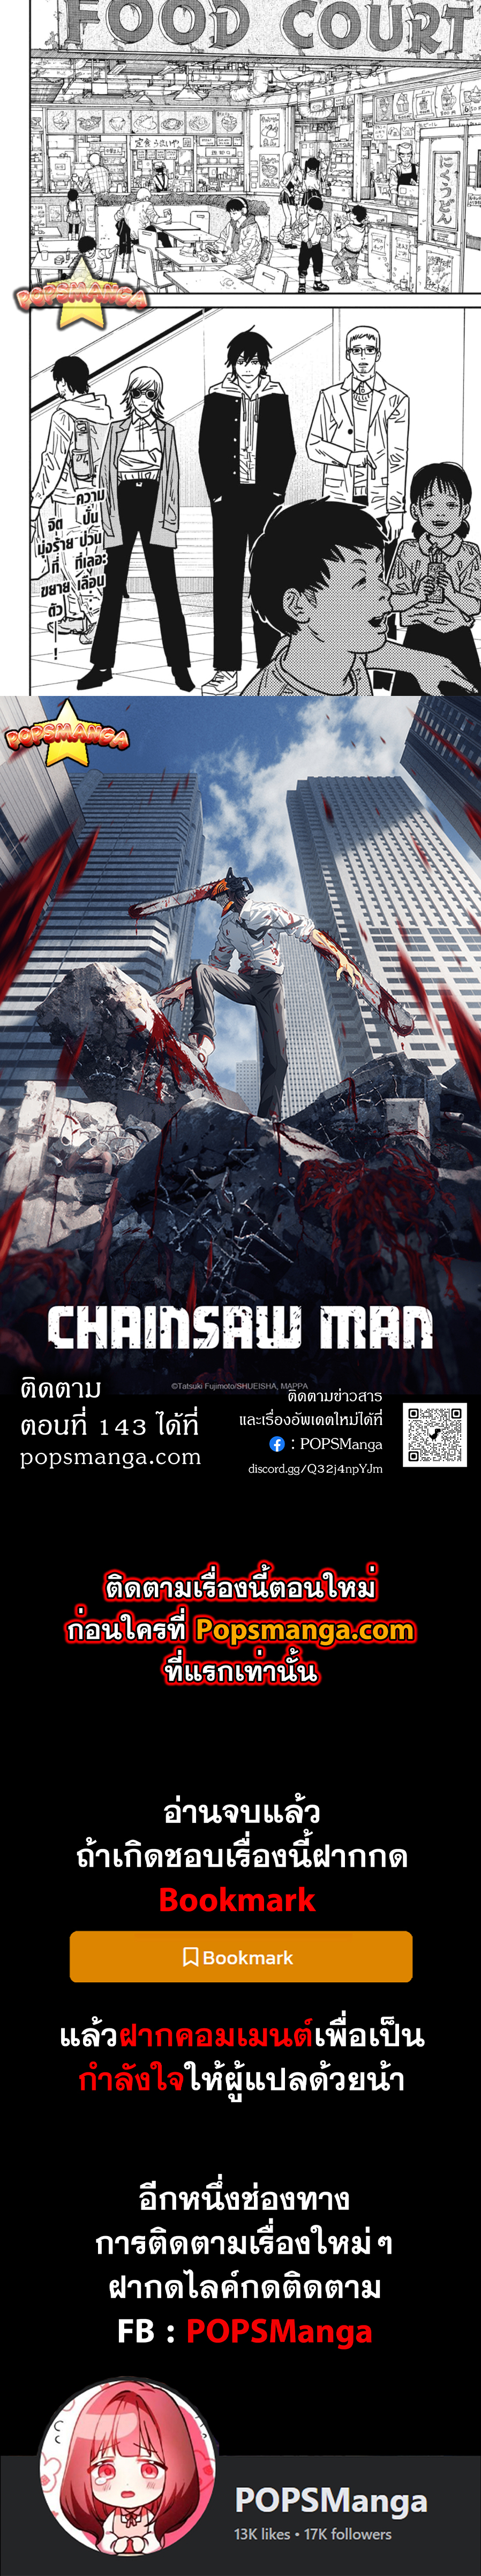 chainsaw man 142.14